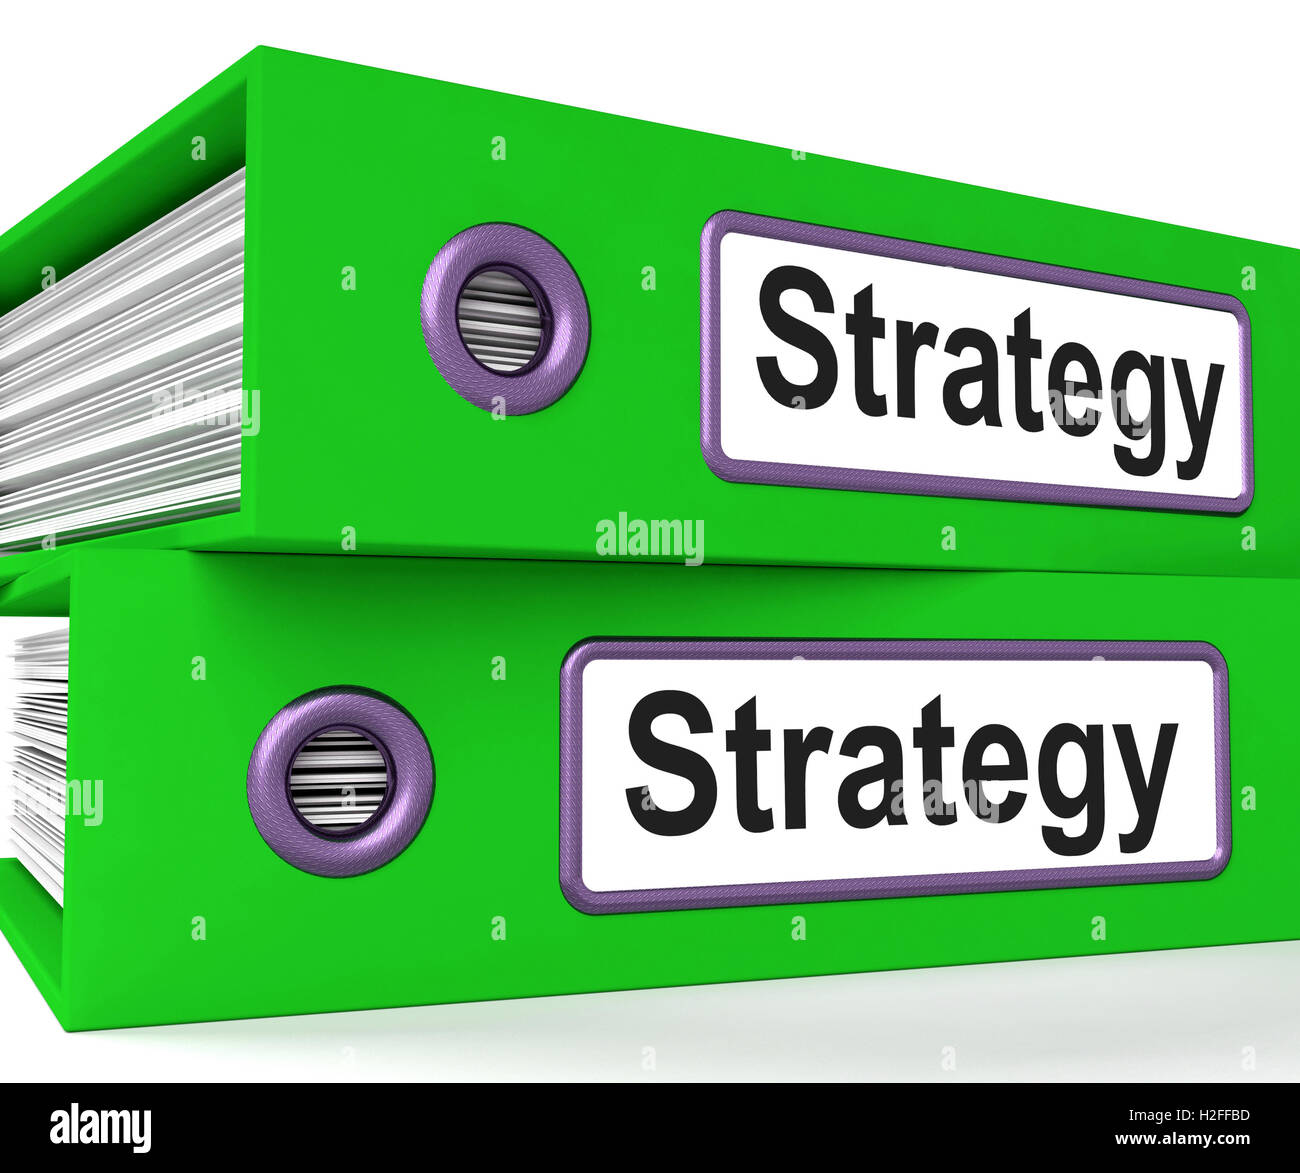 Estrategia carpetas muestran la planificación estratégica y los procesos de negocio Foto de stock